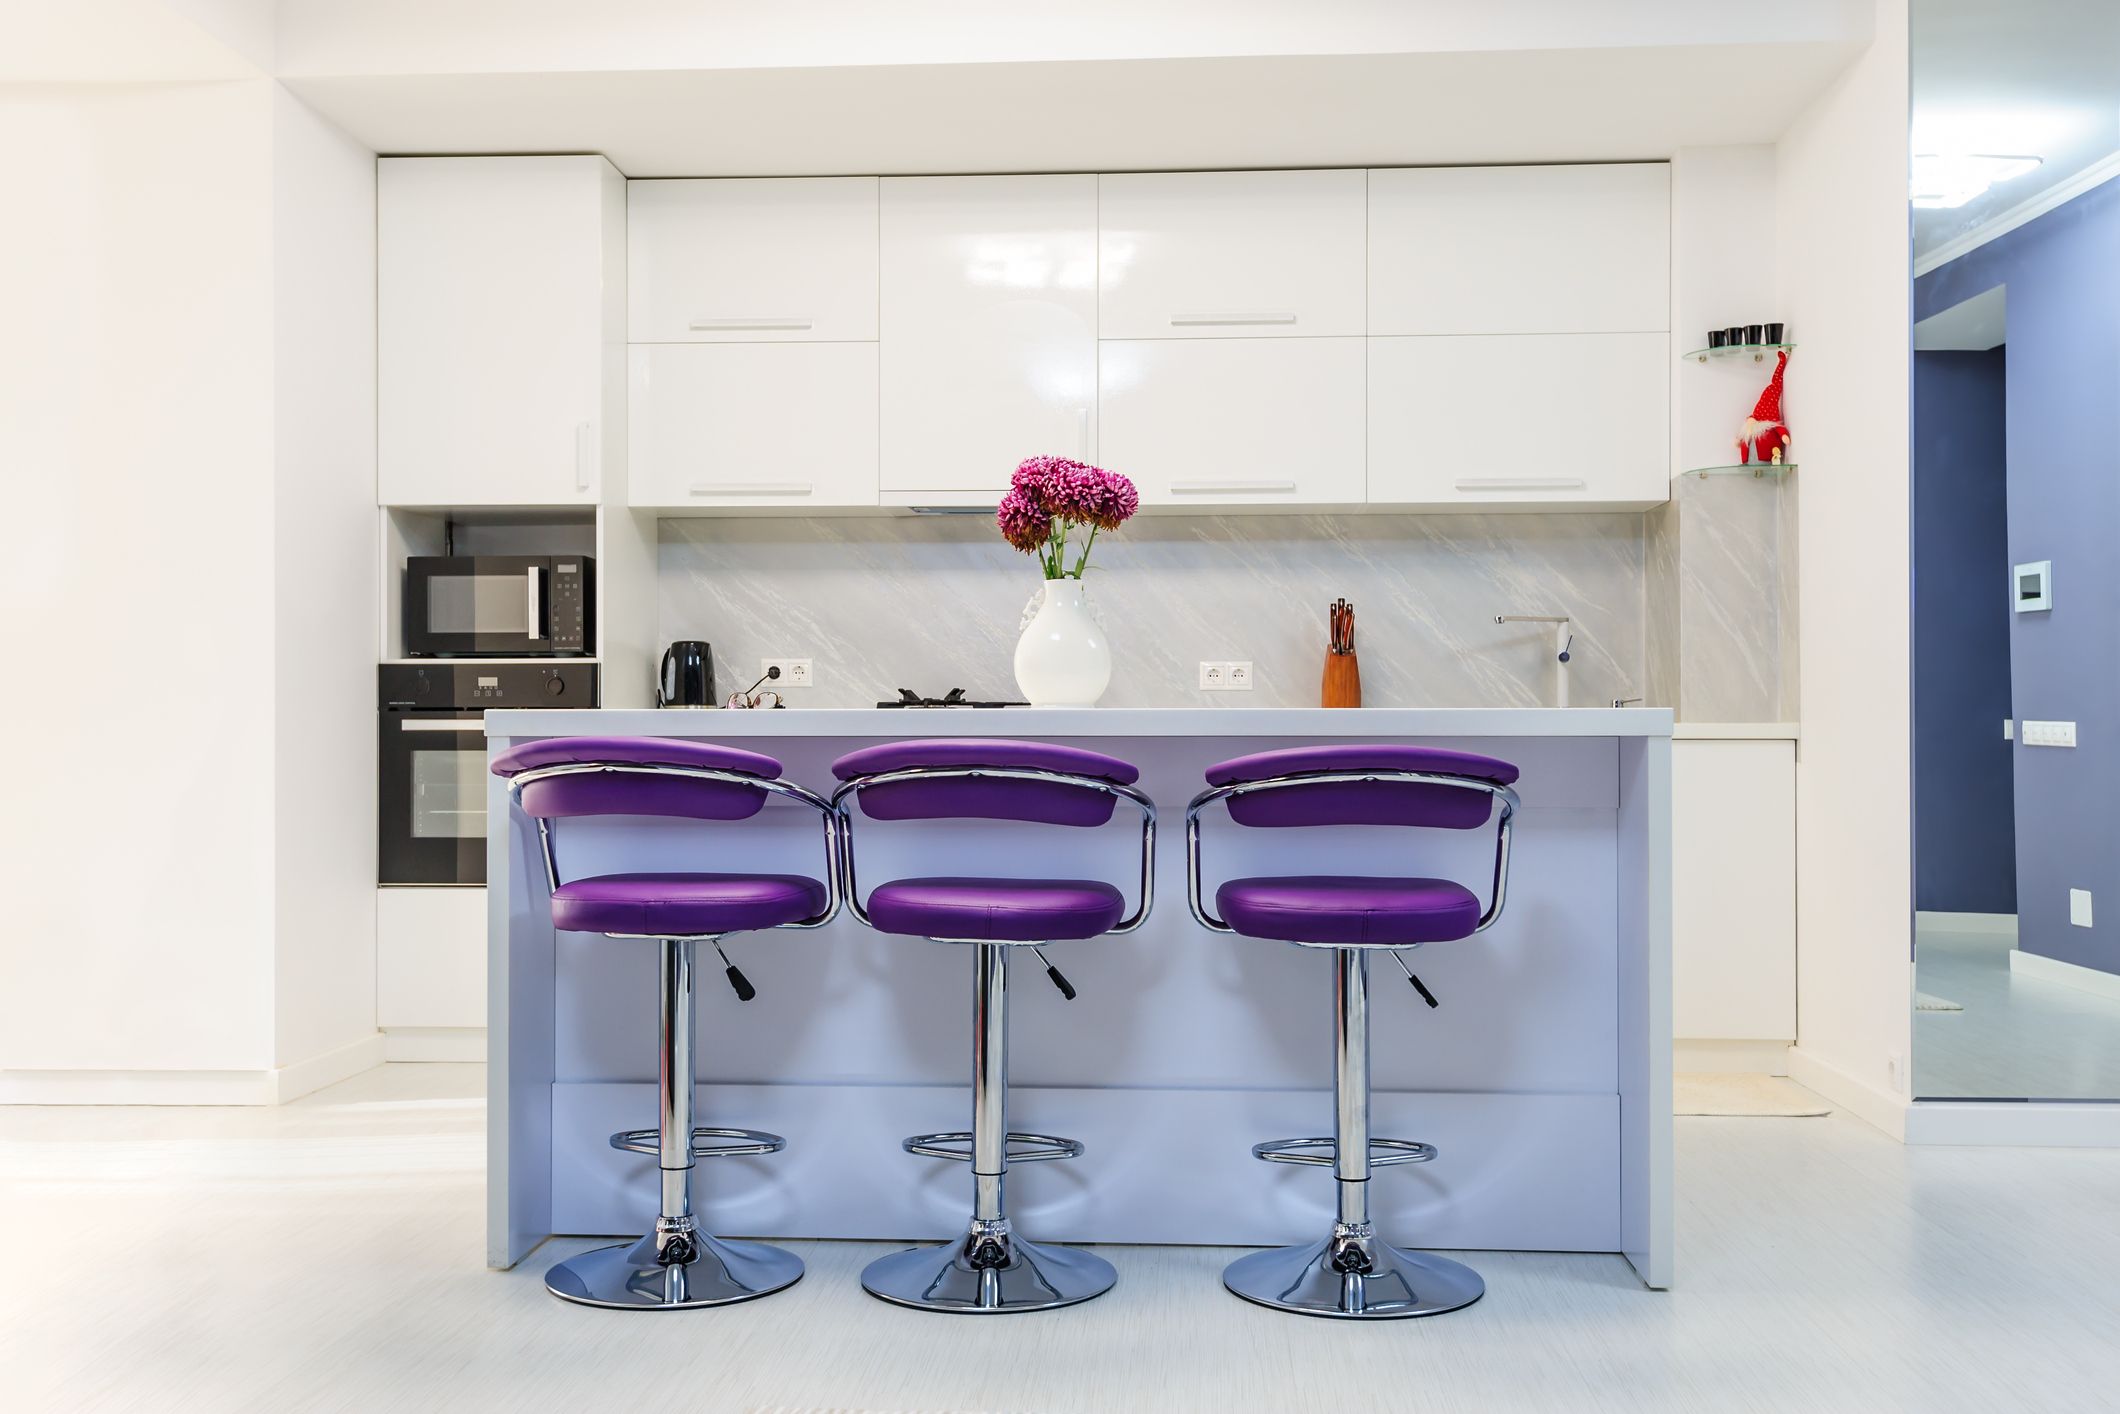 Purple Kitchen Inspiration Ideas